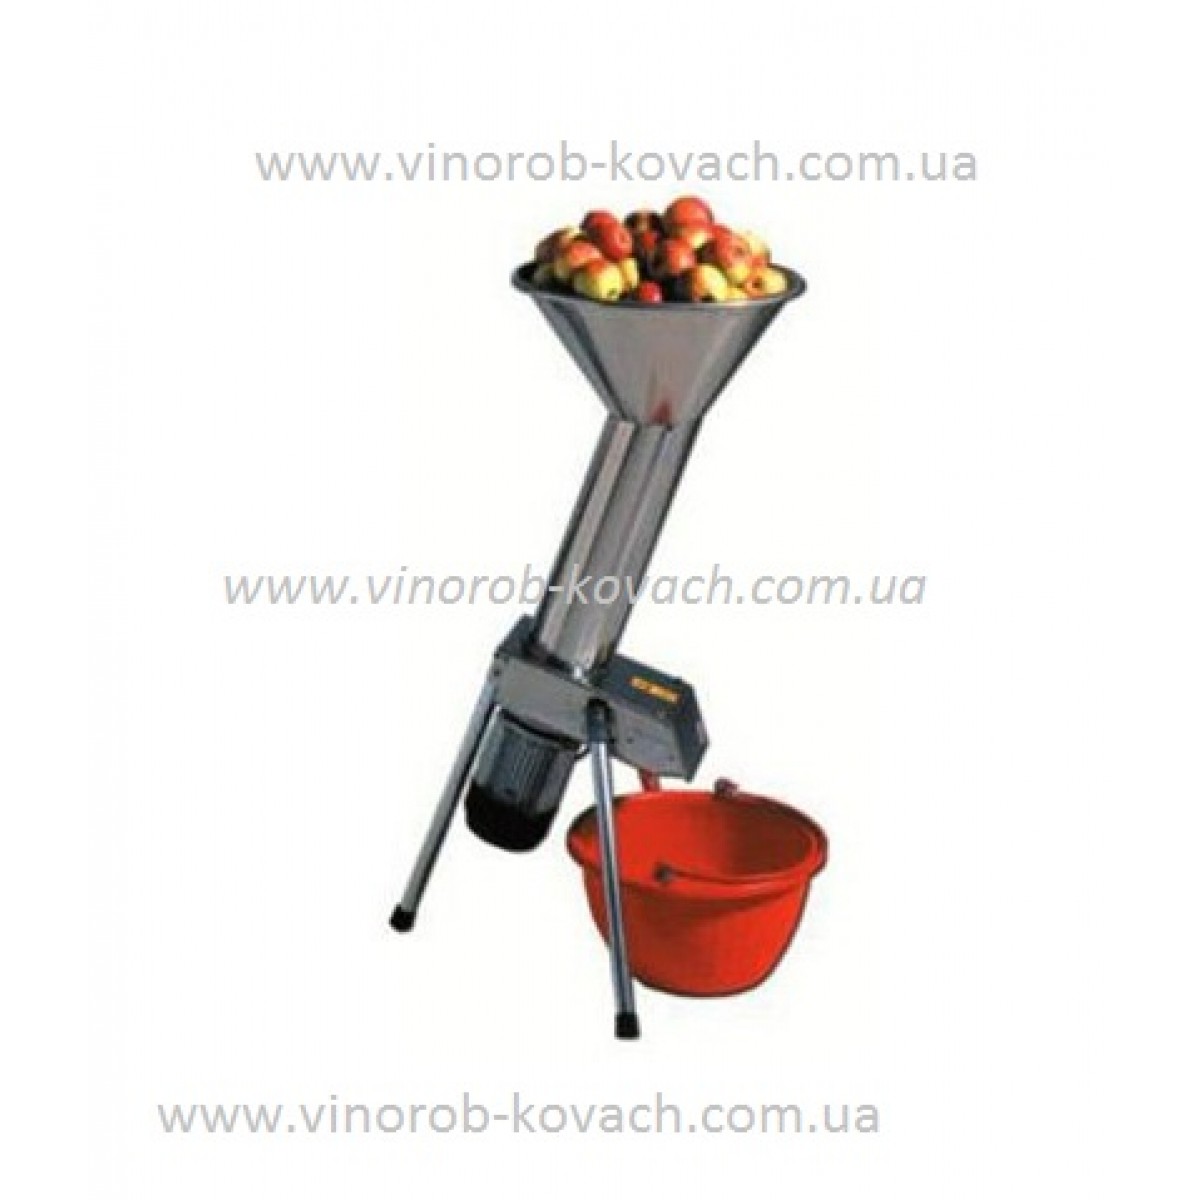 Дробилка PIGMO электрическая большая для ягод, фруктов и овощей